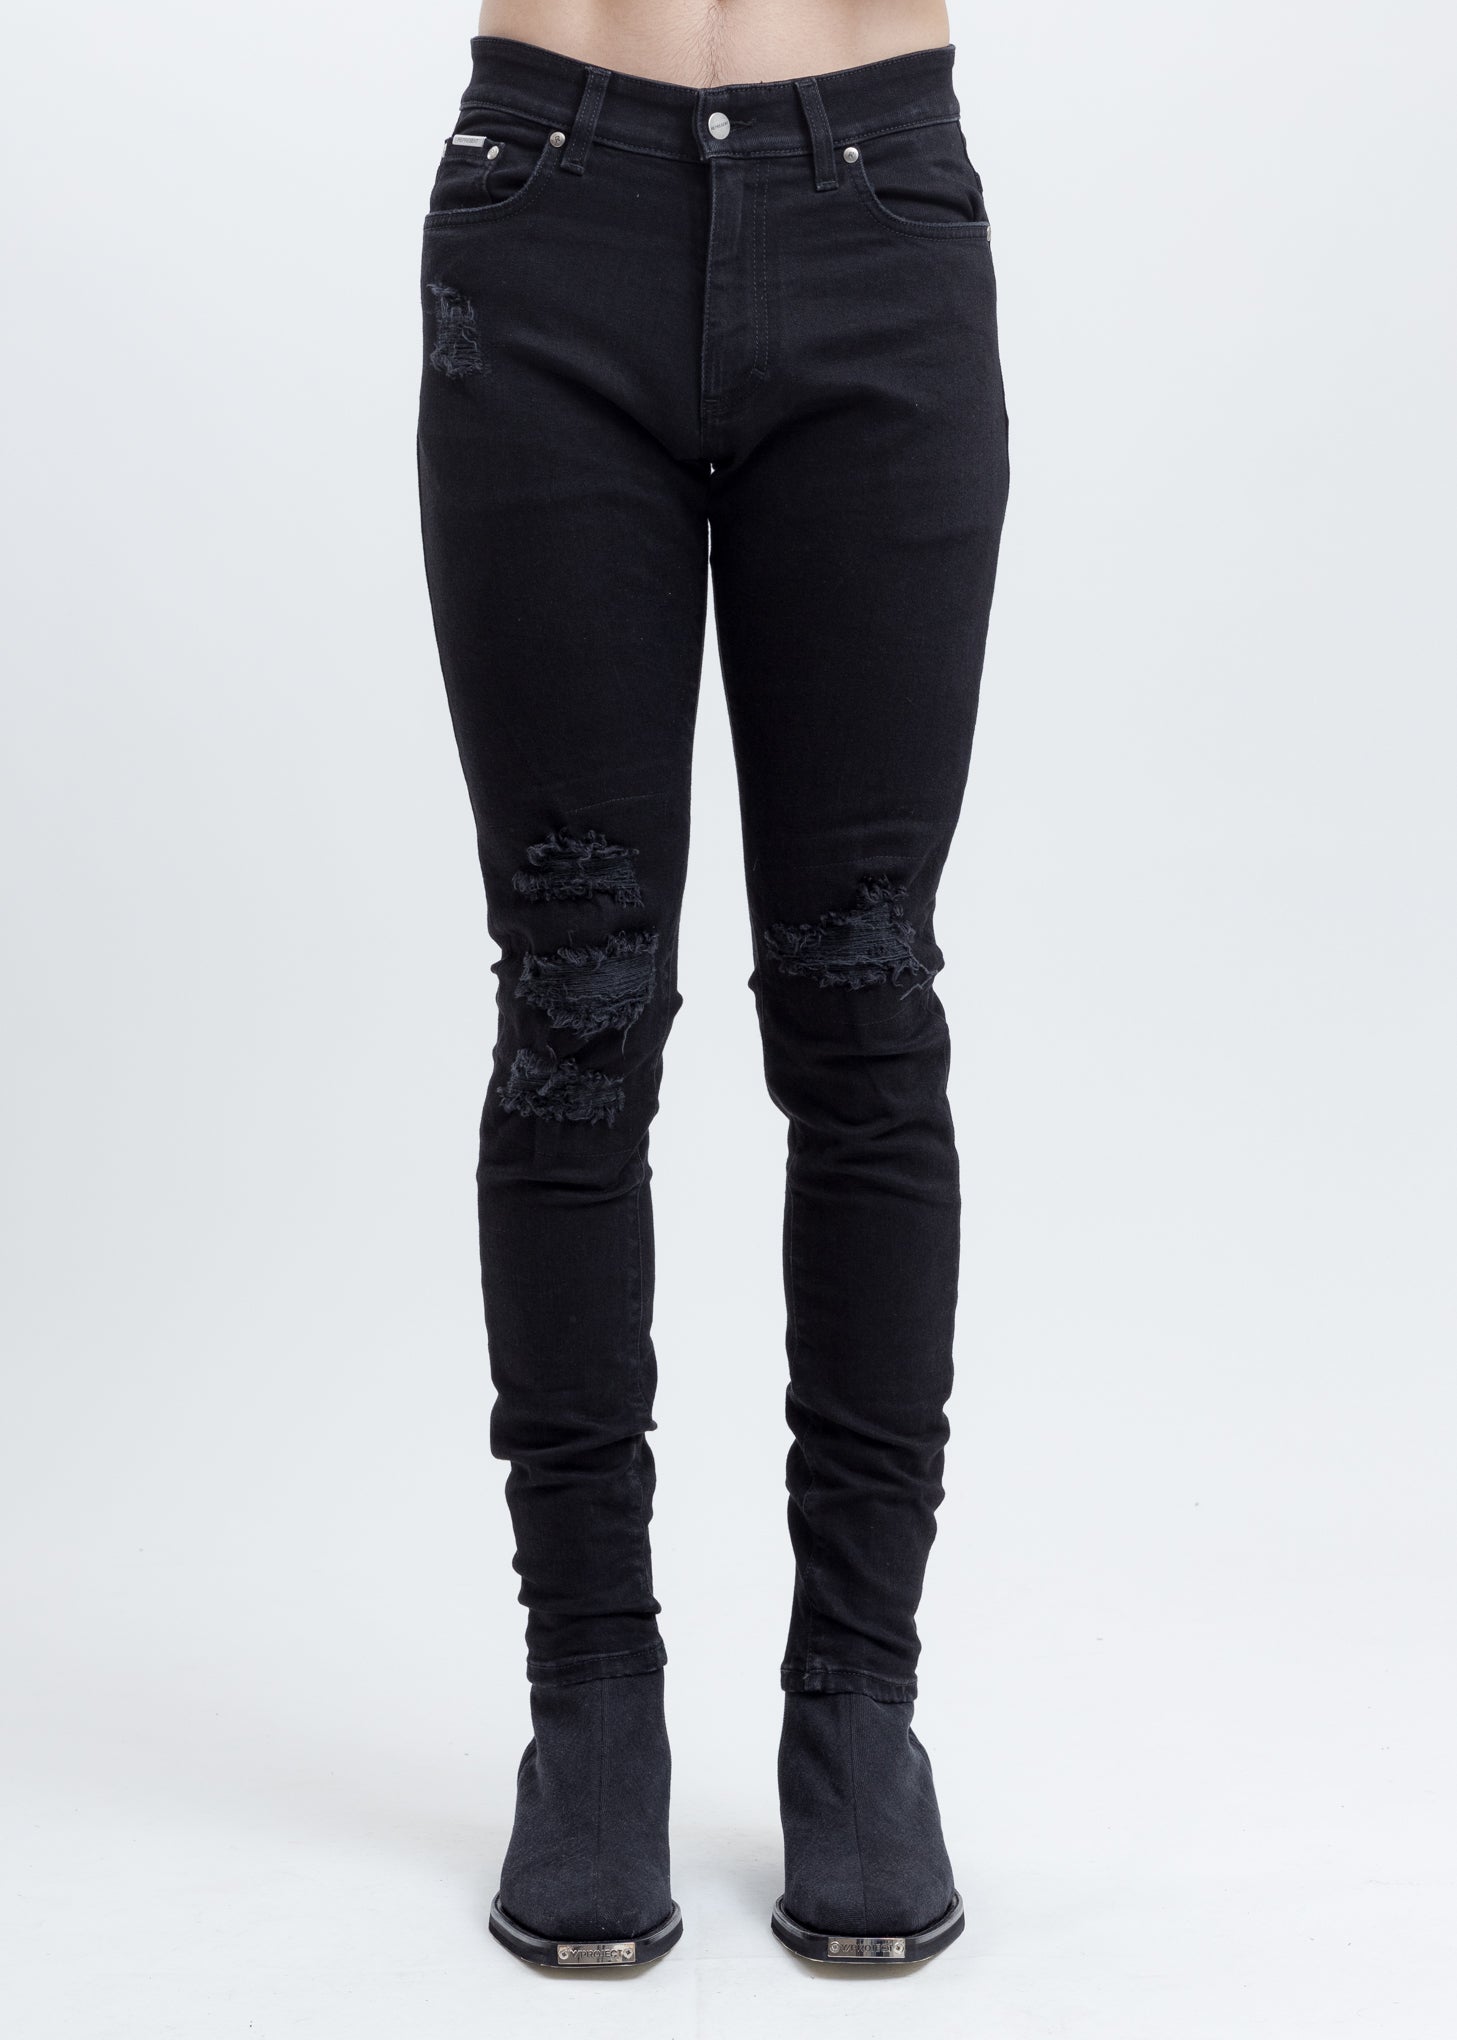 Black Underwork Denim Jeans – 017 Shop